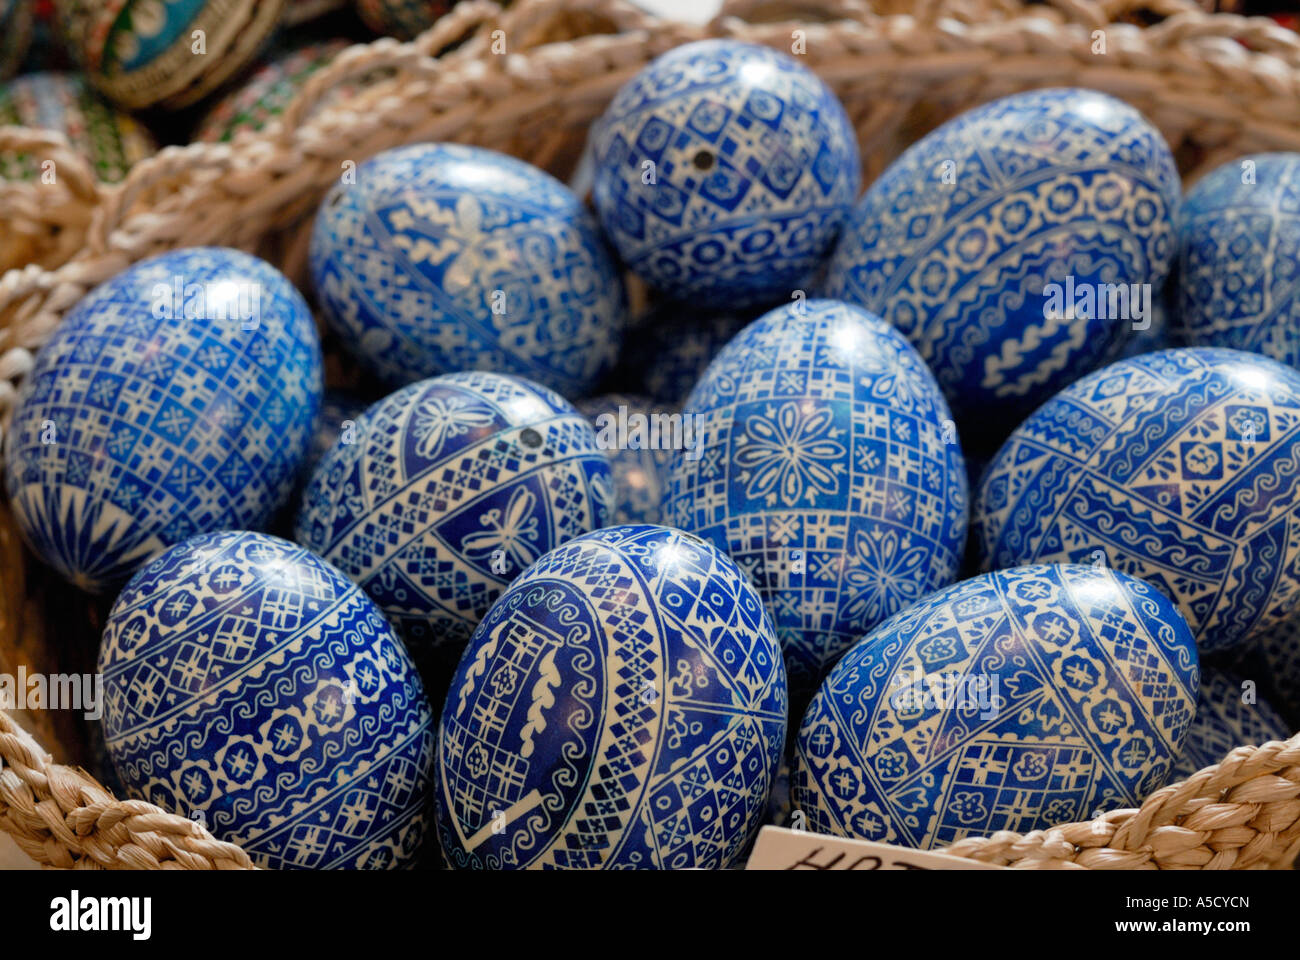 Coquilles d'œufs peints dans une boutique de souvenirs. Sibiu, Roumanie Banque D'Images